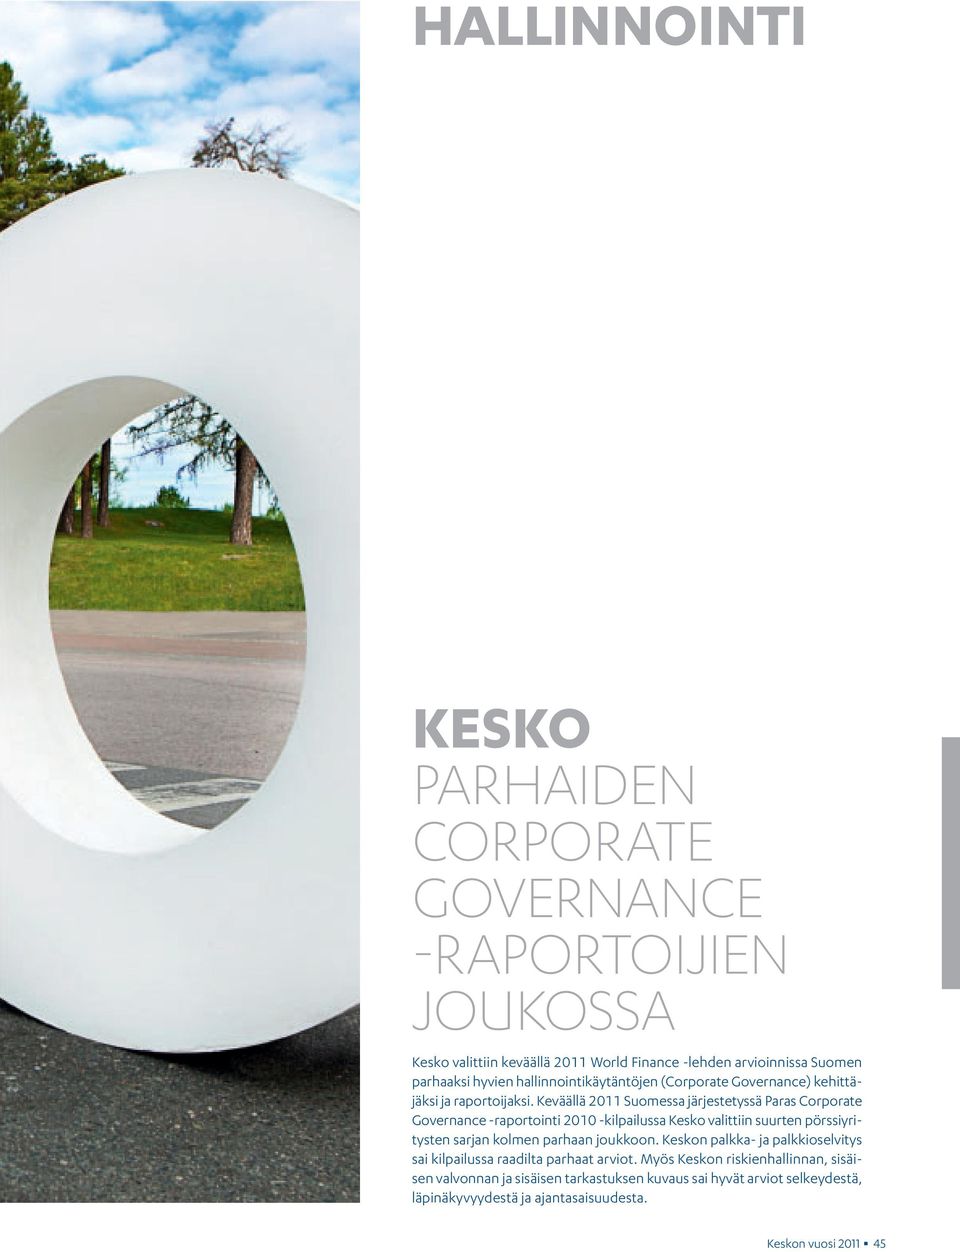 Keväällä 2011 Suomessa järjestetyssä Paras Corporate Governance -raportointi 2010 -kilpailussa Kesko valittiin suurten pörssiyritysten sarjan kolmen parhaan